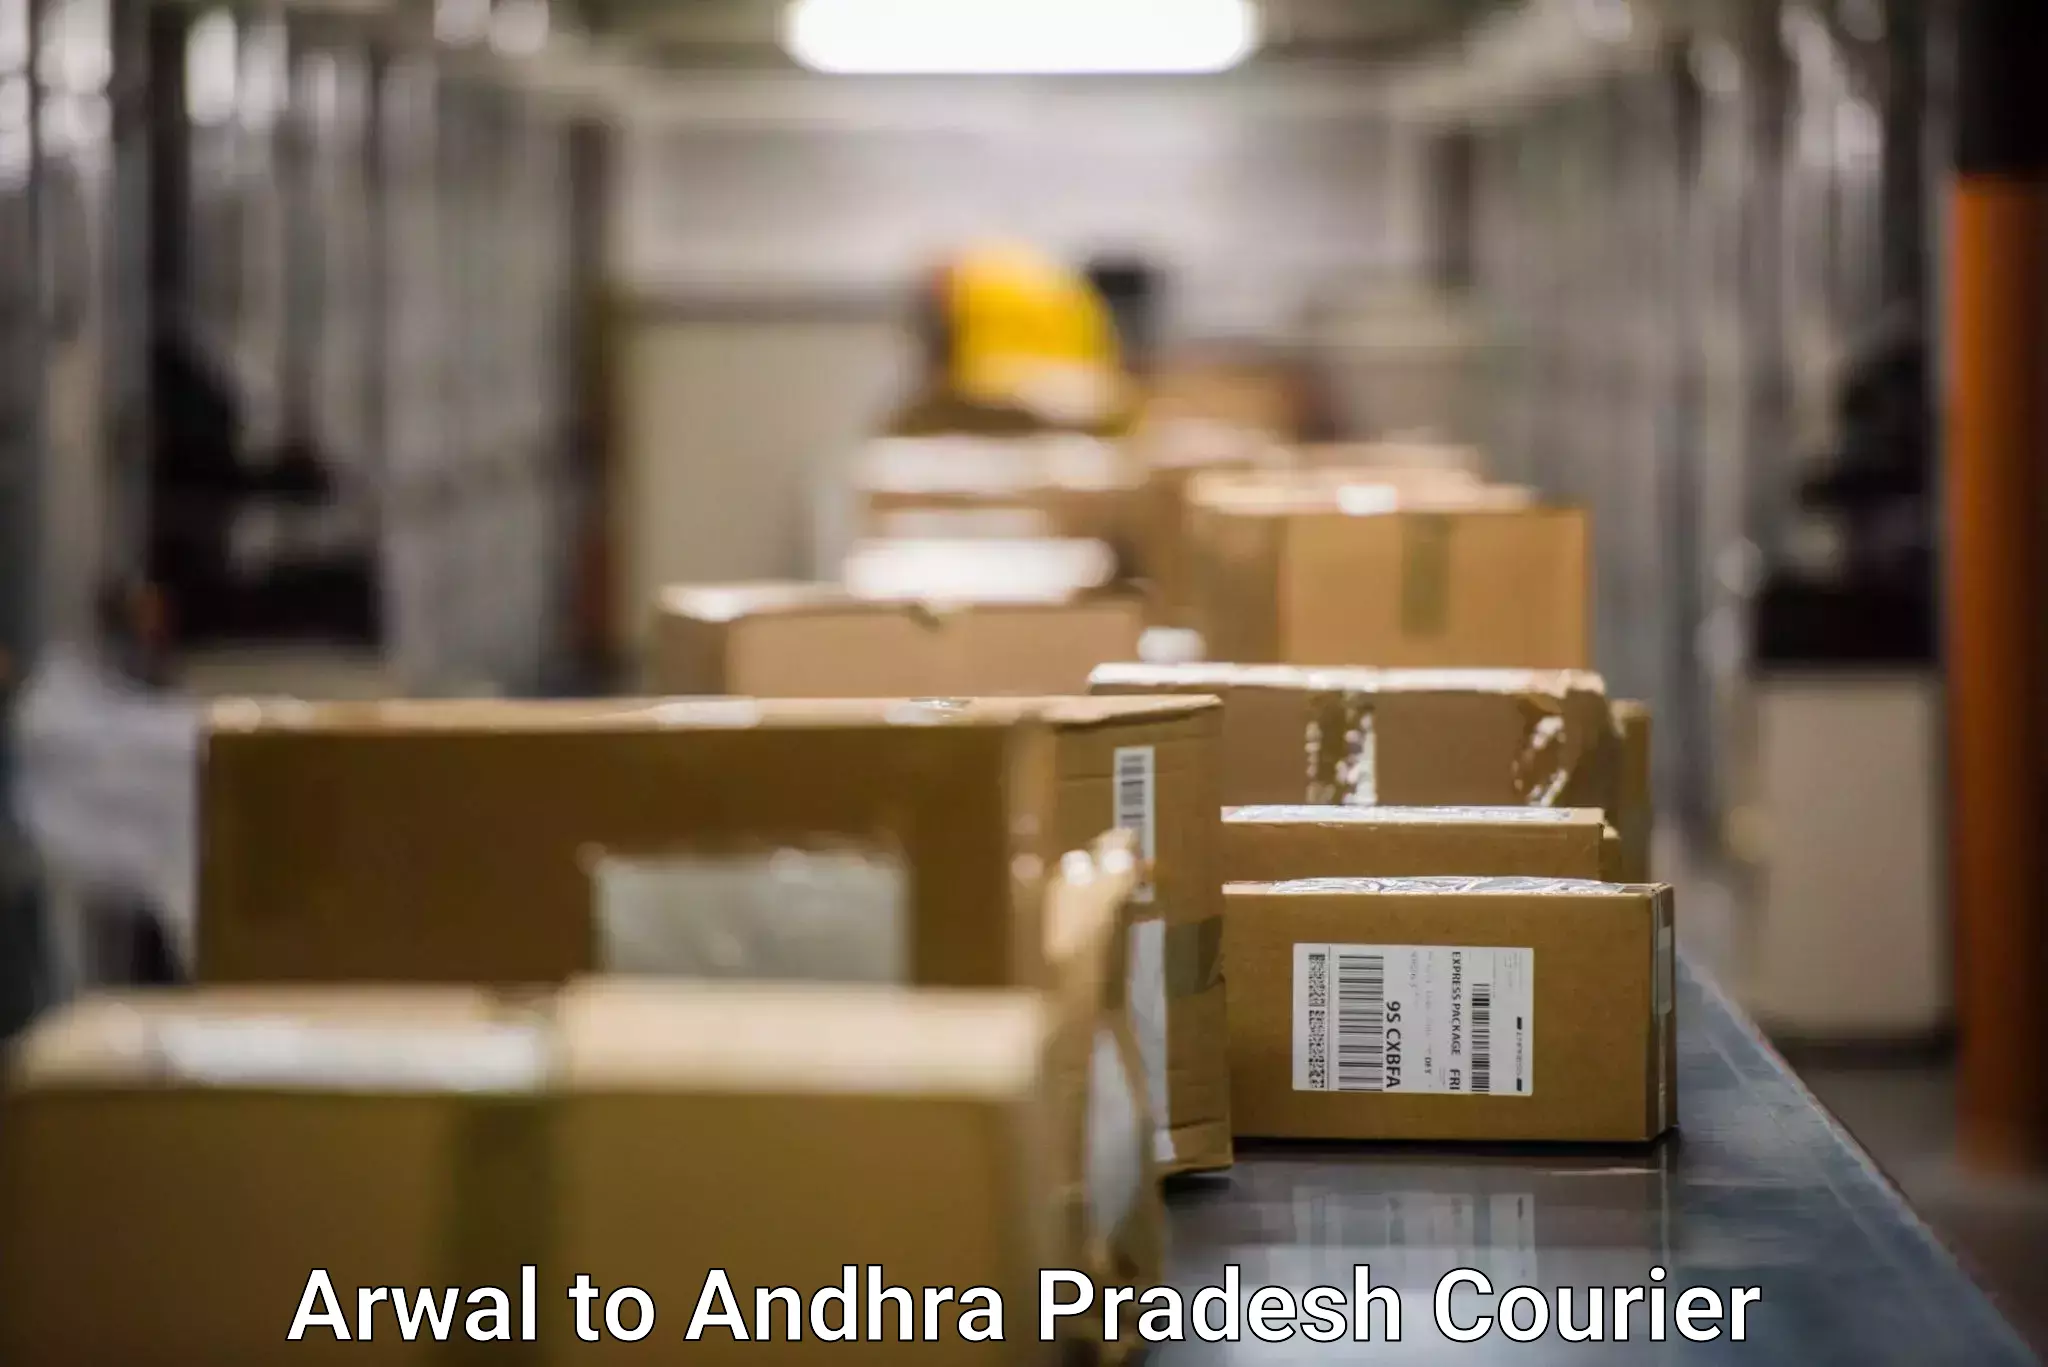 International parcel service Arwal to Allagadda